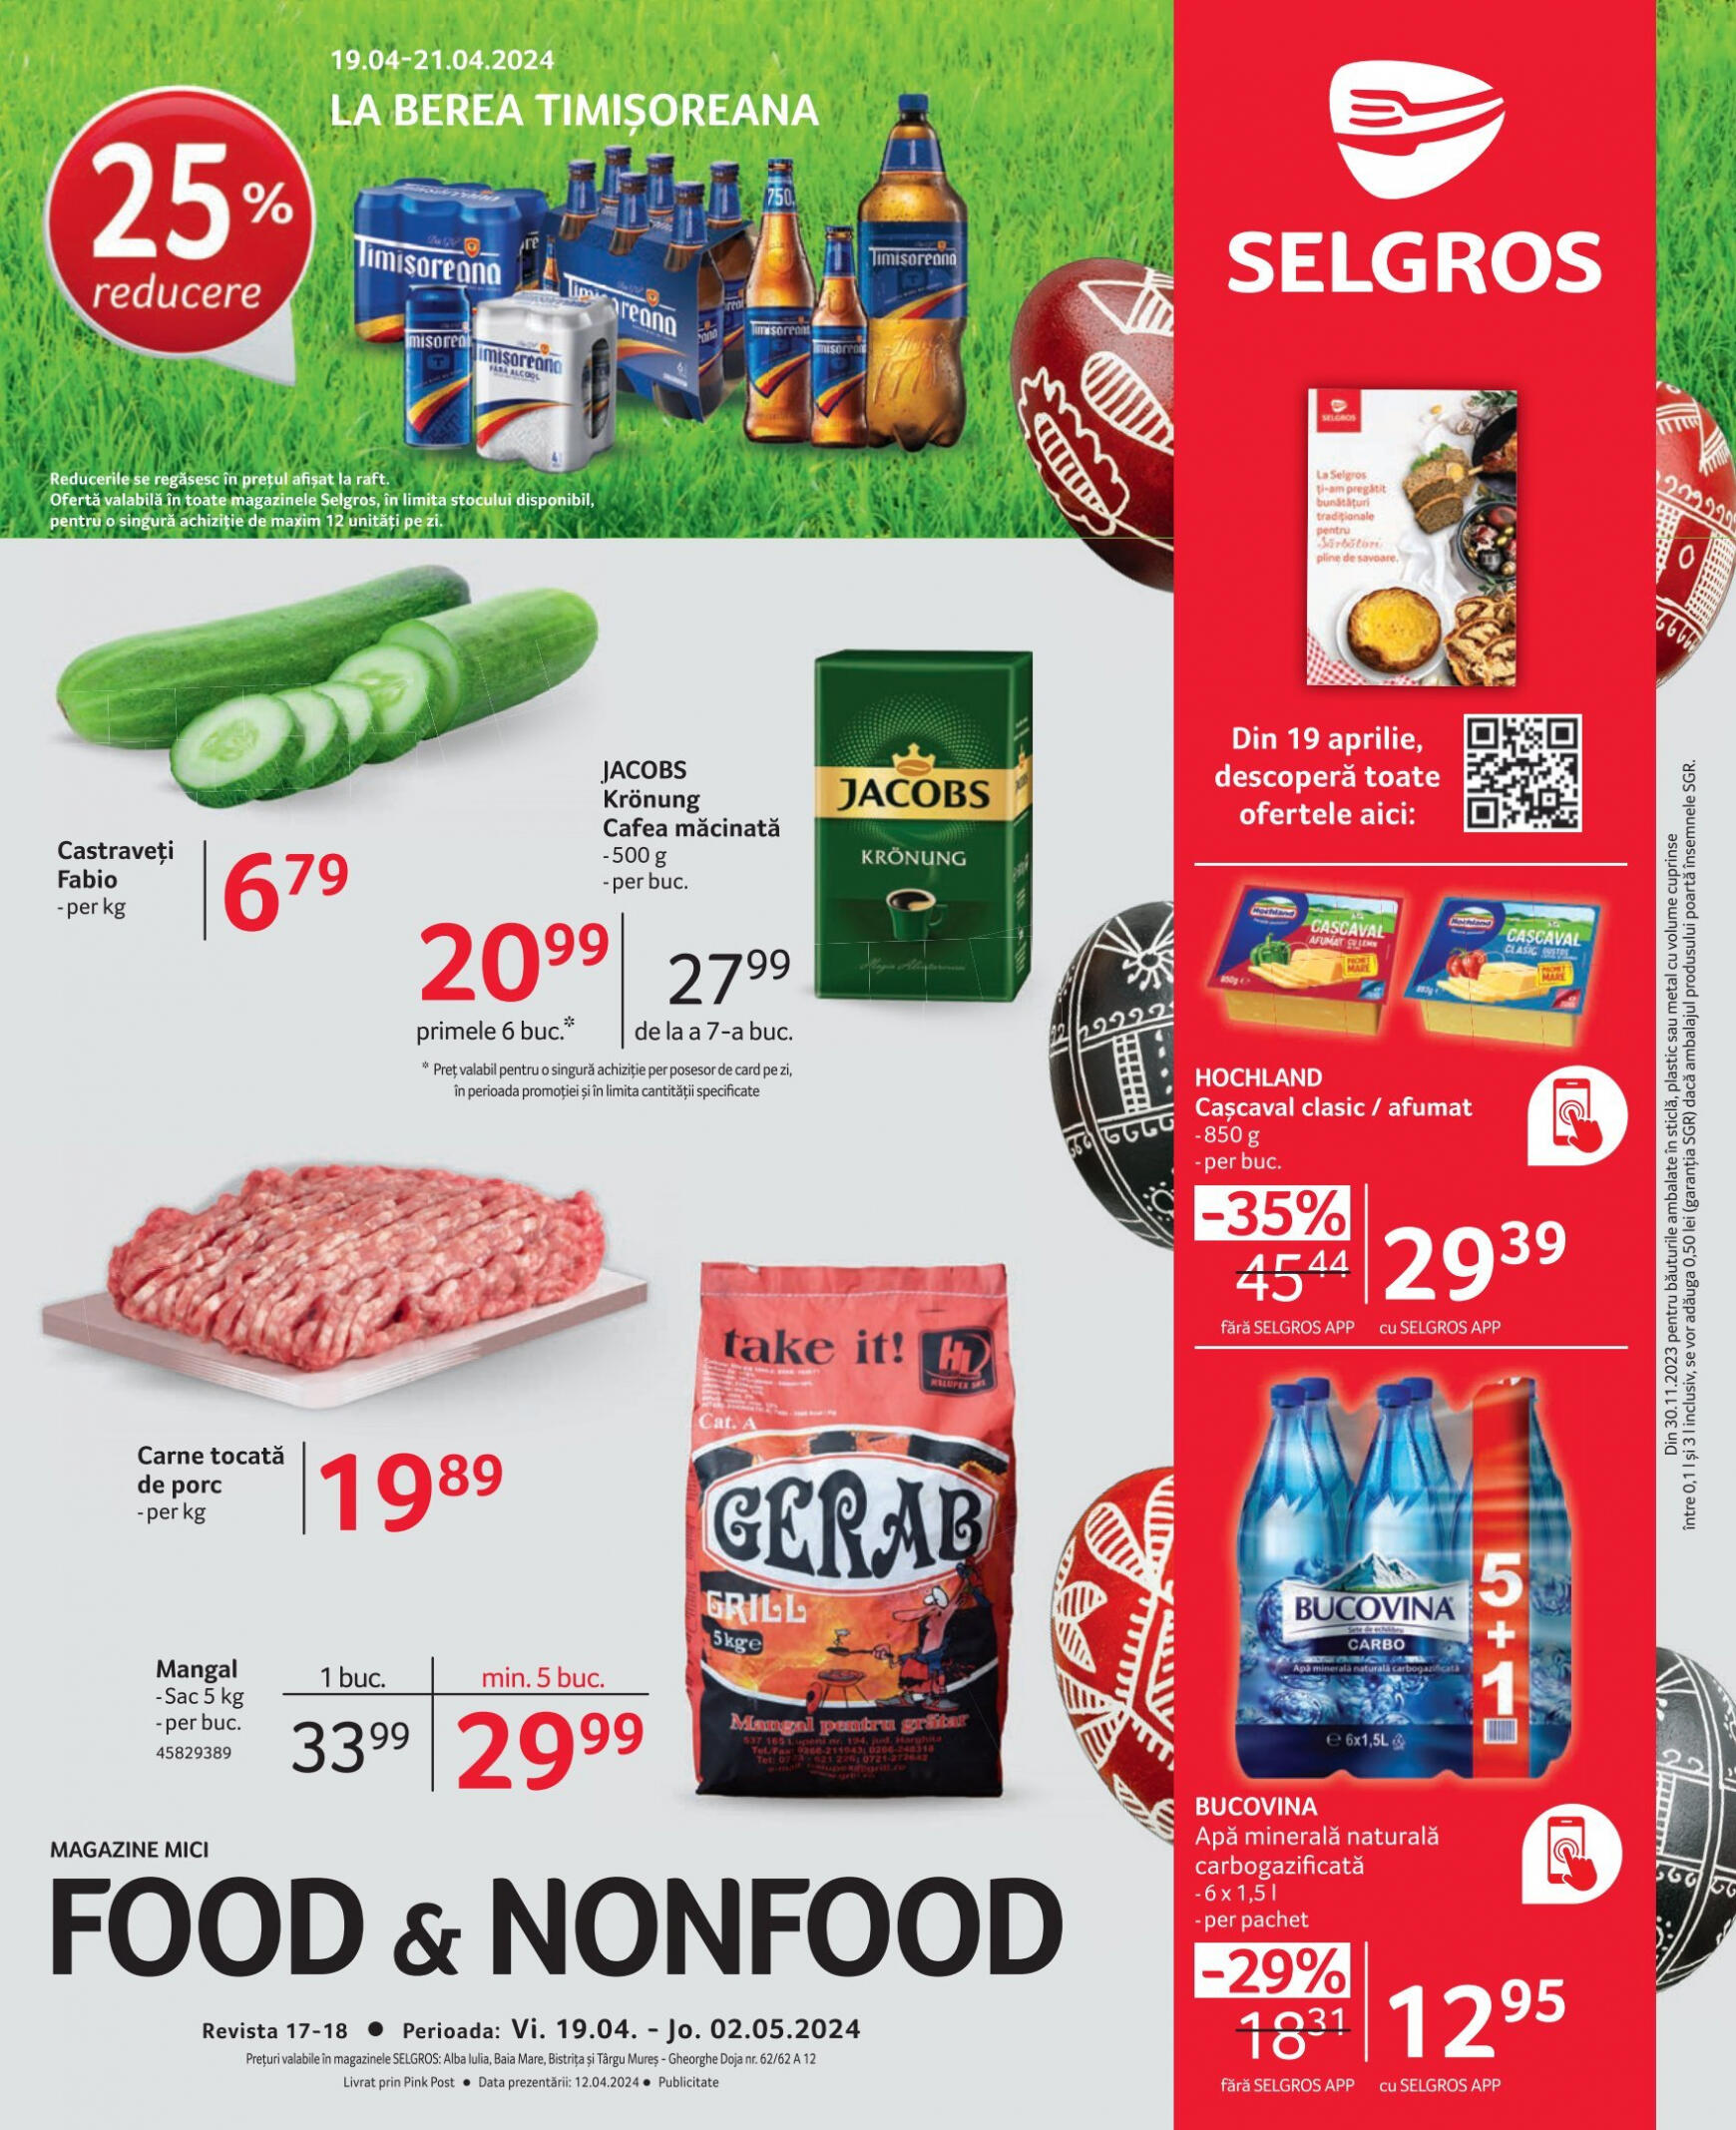 selgros - Catalog nou Selgros - Food & Nonfood 19.04. - 02.05.